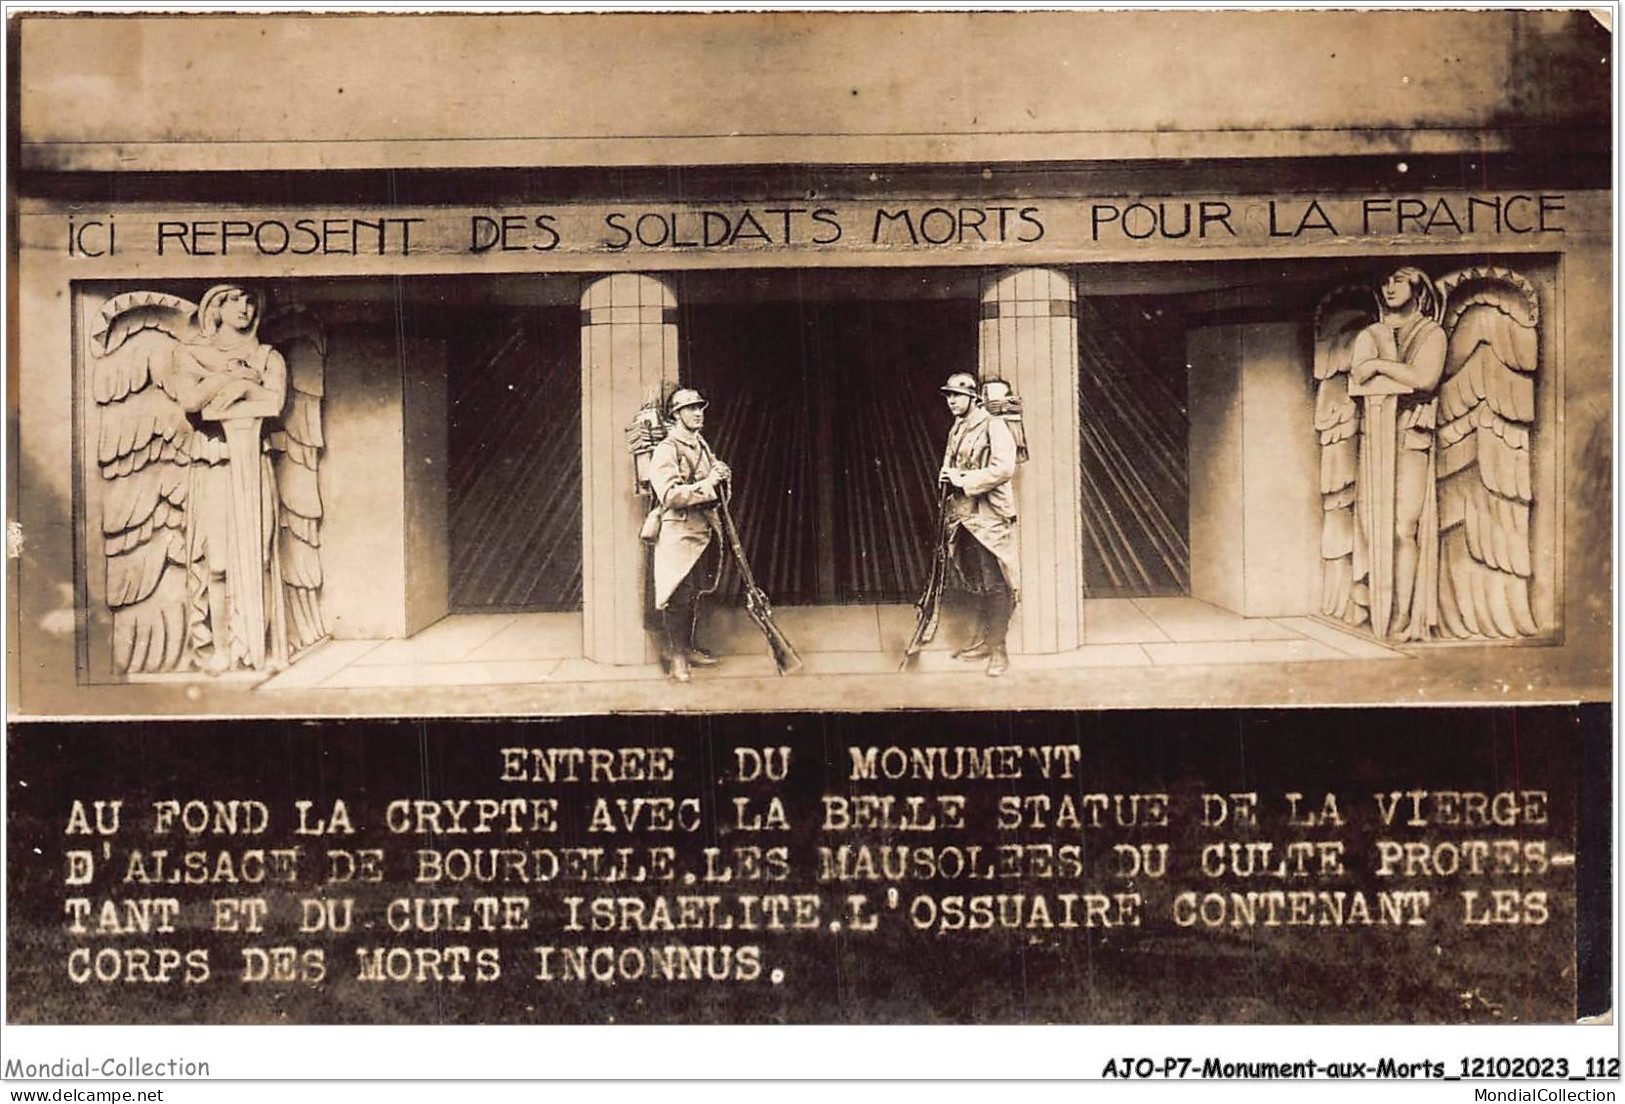 AJOP7-0704 - MONUMENT-AUX-MORTS - Ici Reposent Des Soldats Morts Pour La France -CULTE ISRAELITE JUDAICA JUIF RELIGION - Monumentos A Los Caídos